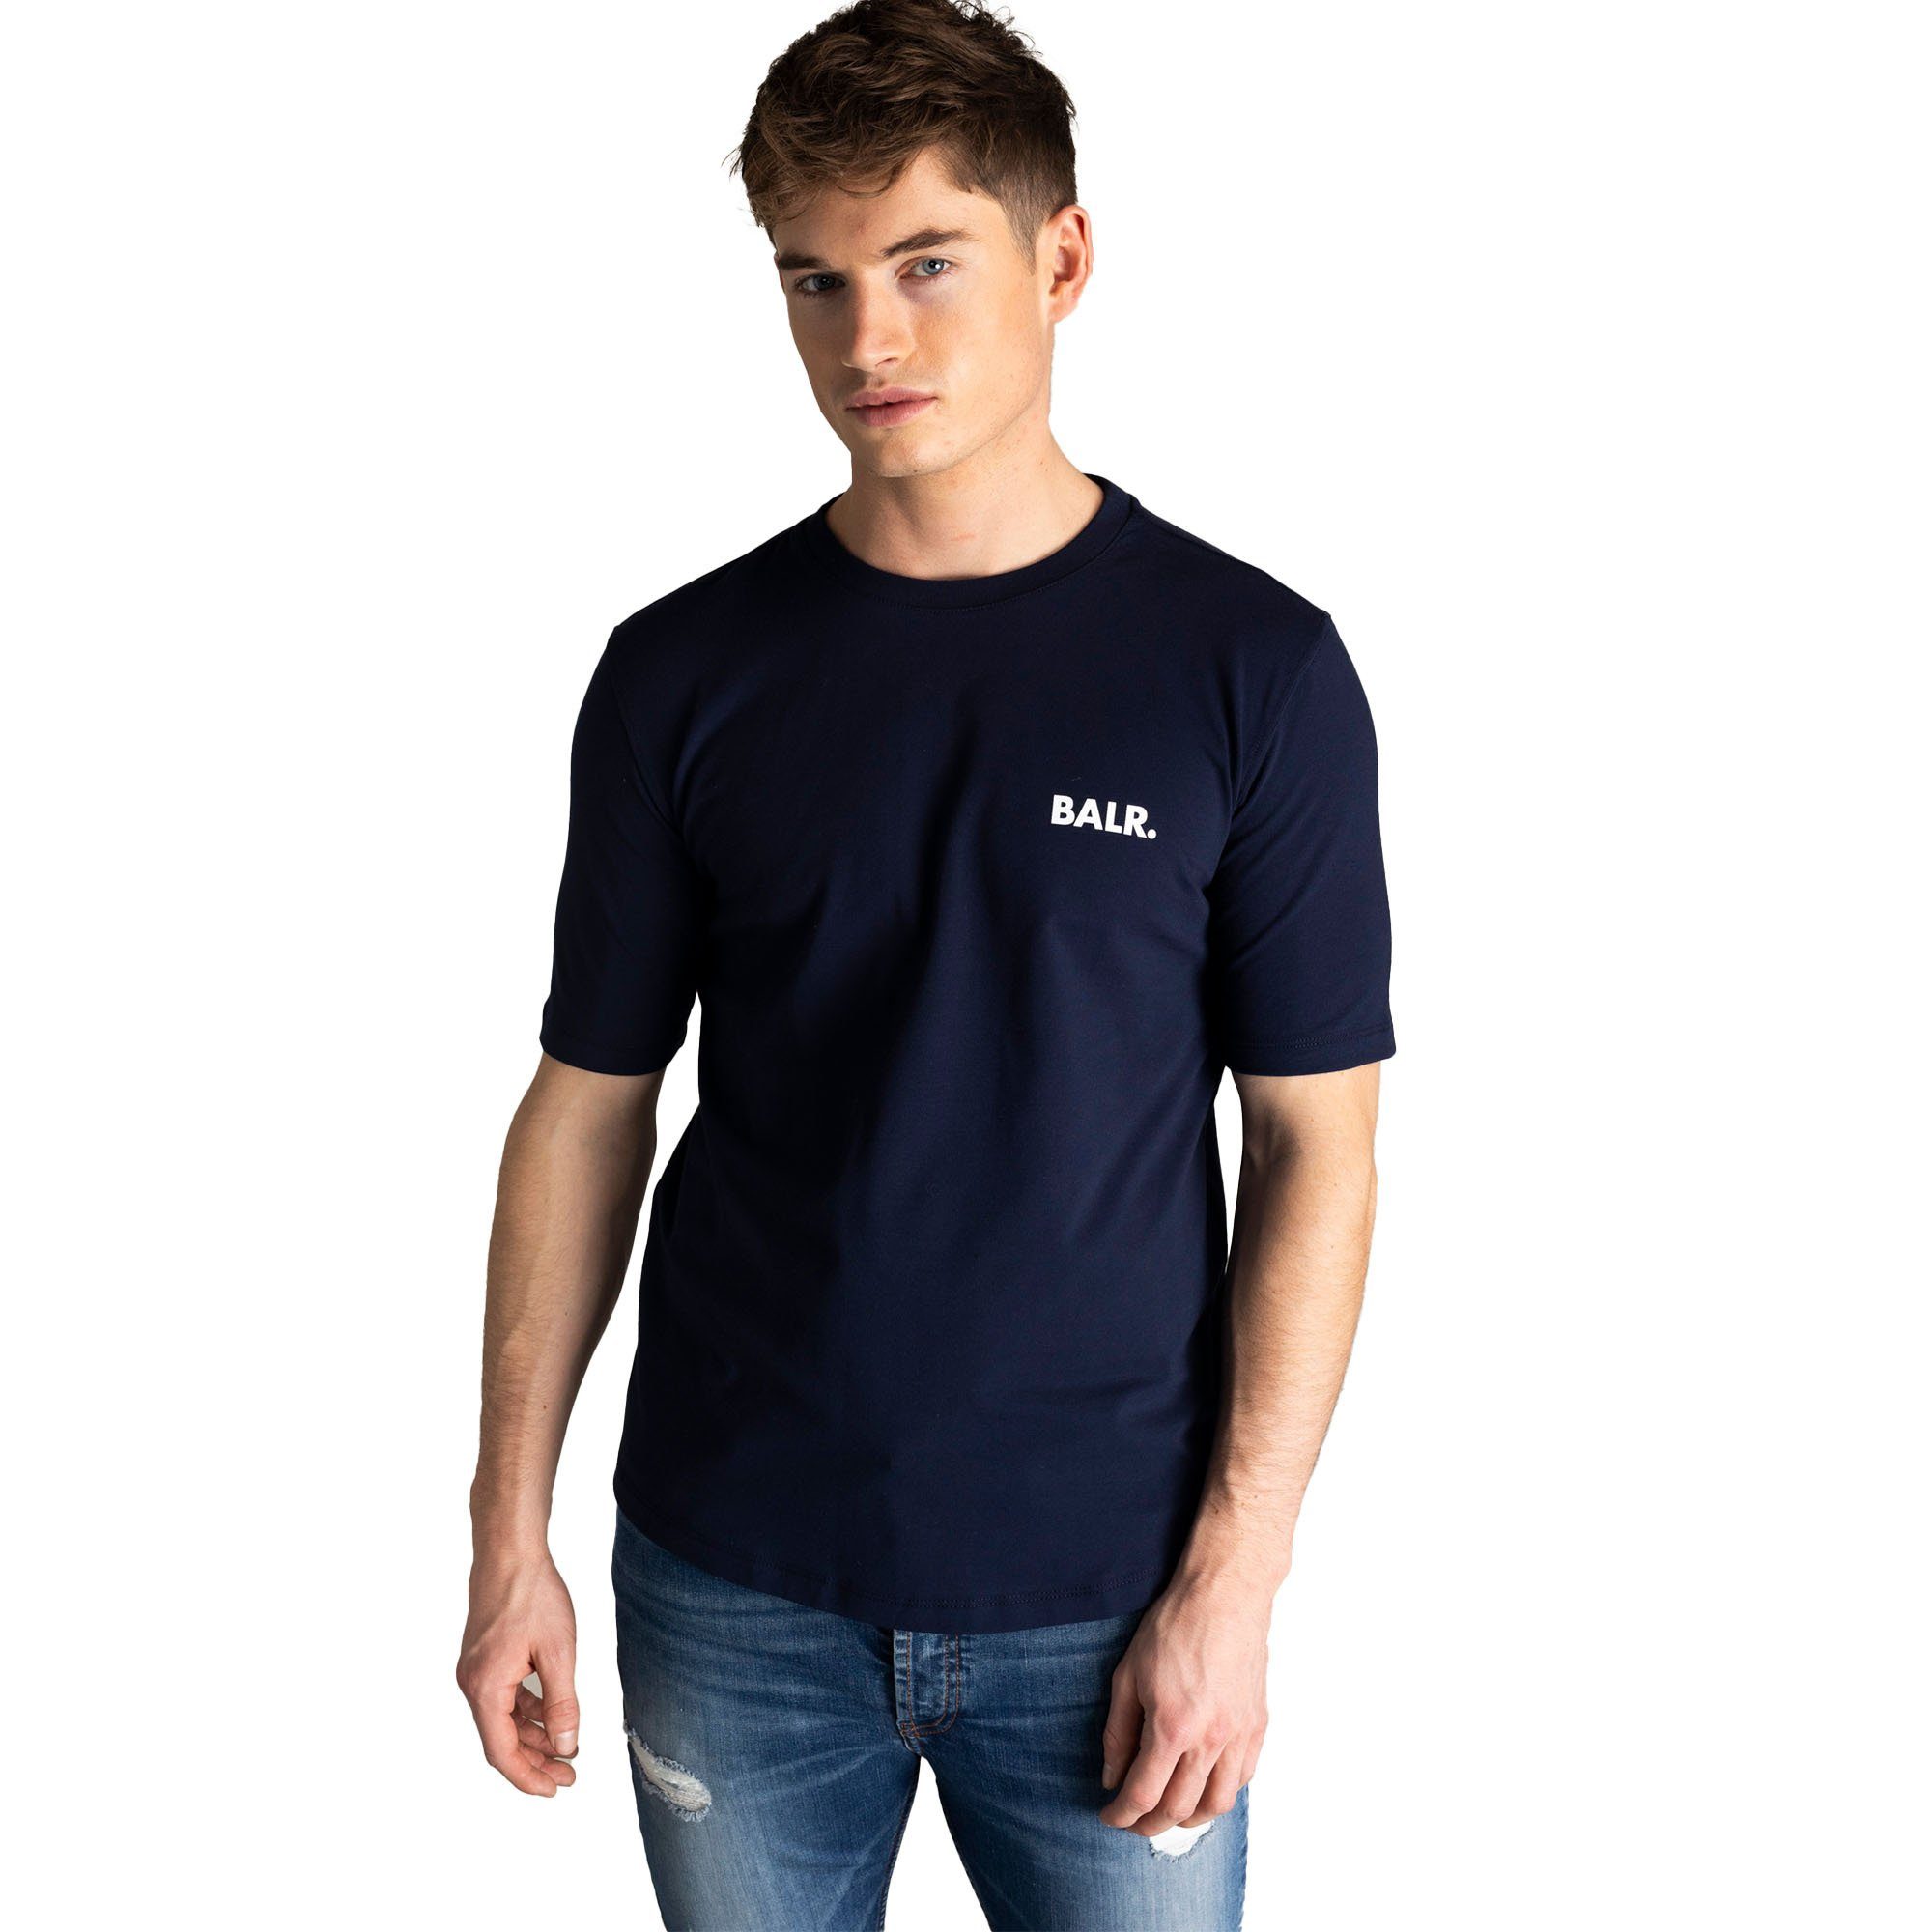 BALR. T-Shirt Herren - Chest Dunkelblau Small Branded T-Shirt Athletic